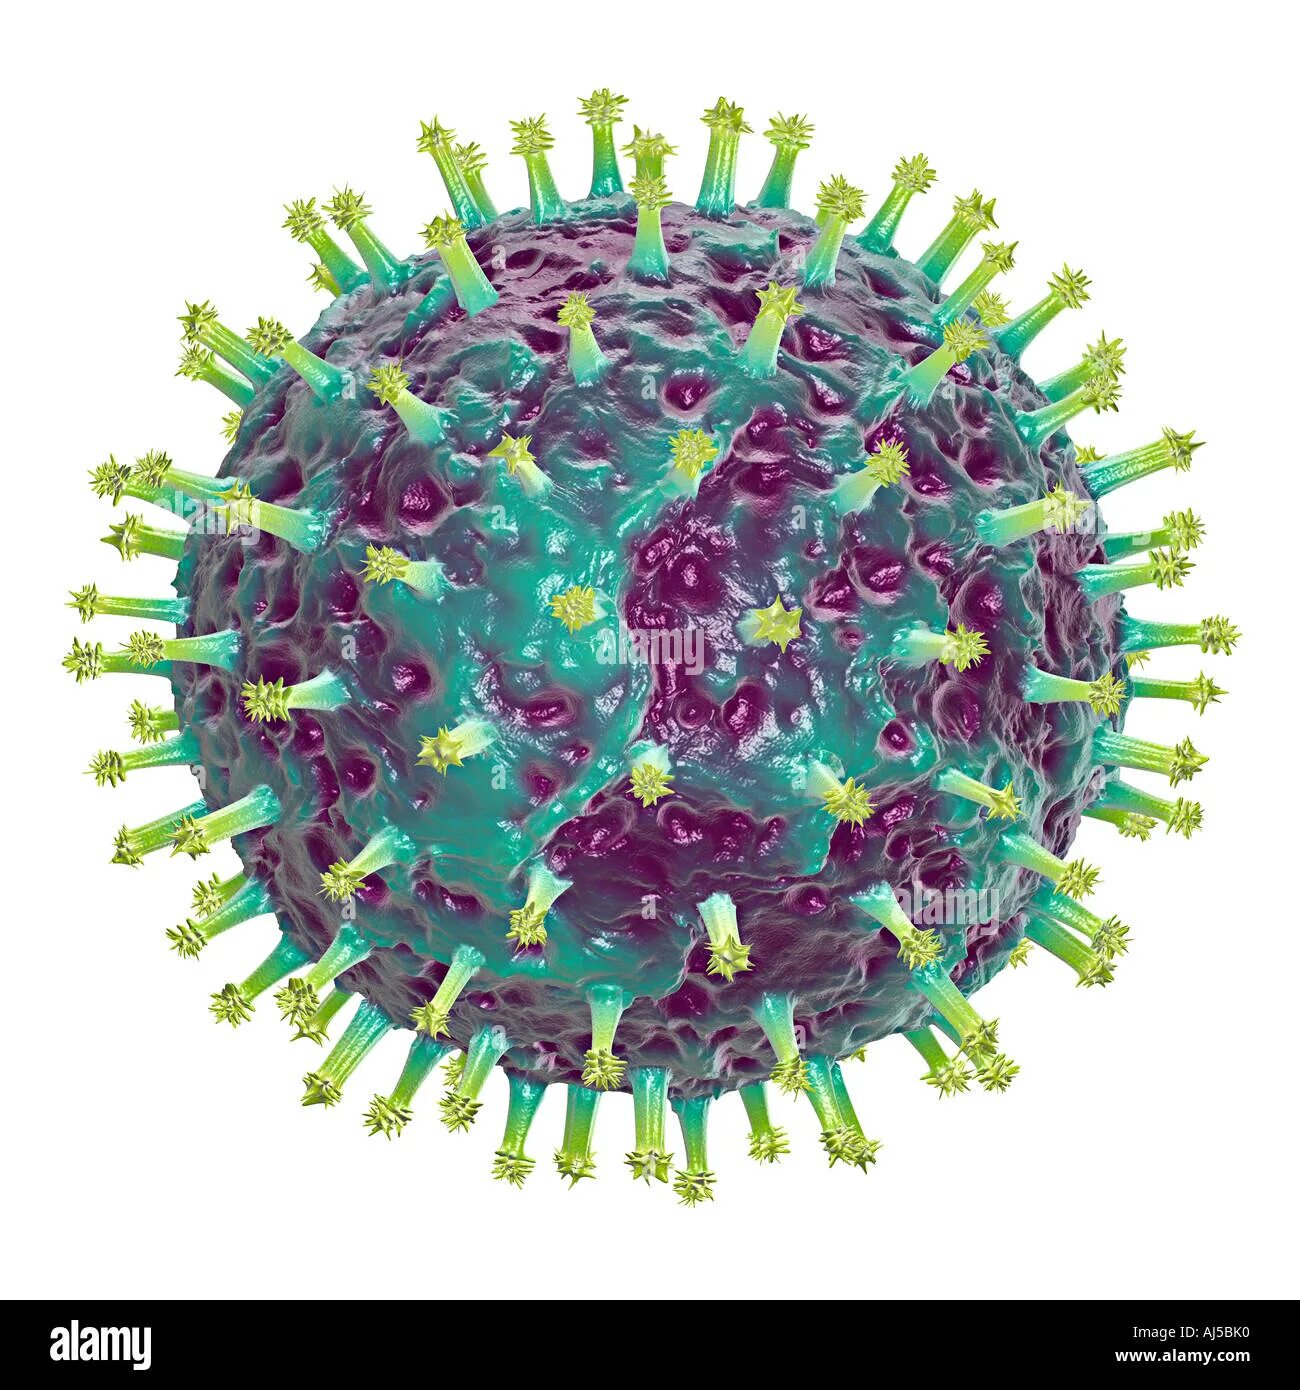 Вирусы гриппа d. Респираторно-синцитиальный вирус человека. Респираторно- синцитиальный вирус резистентность. Вирус гриппа. Изображение вируса гриппа.